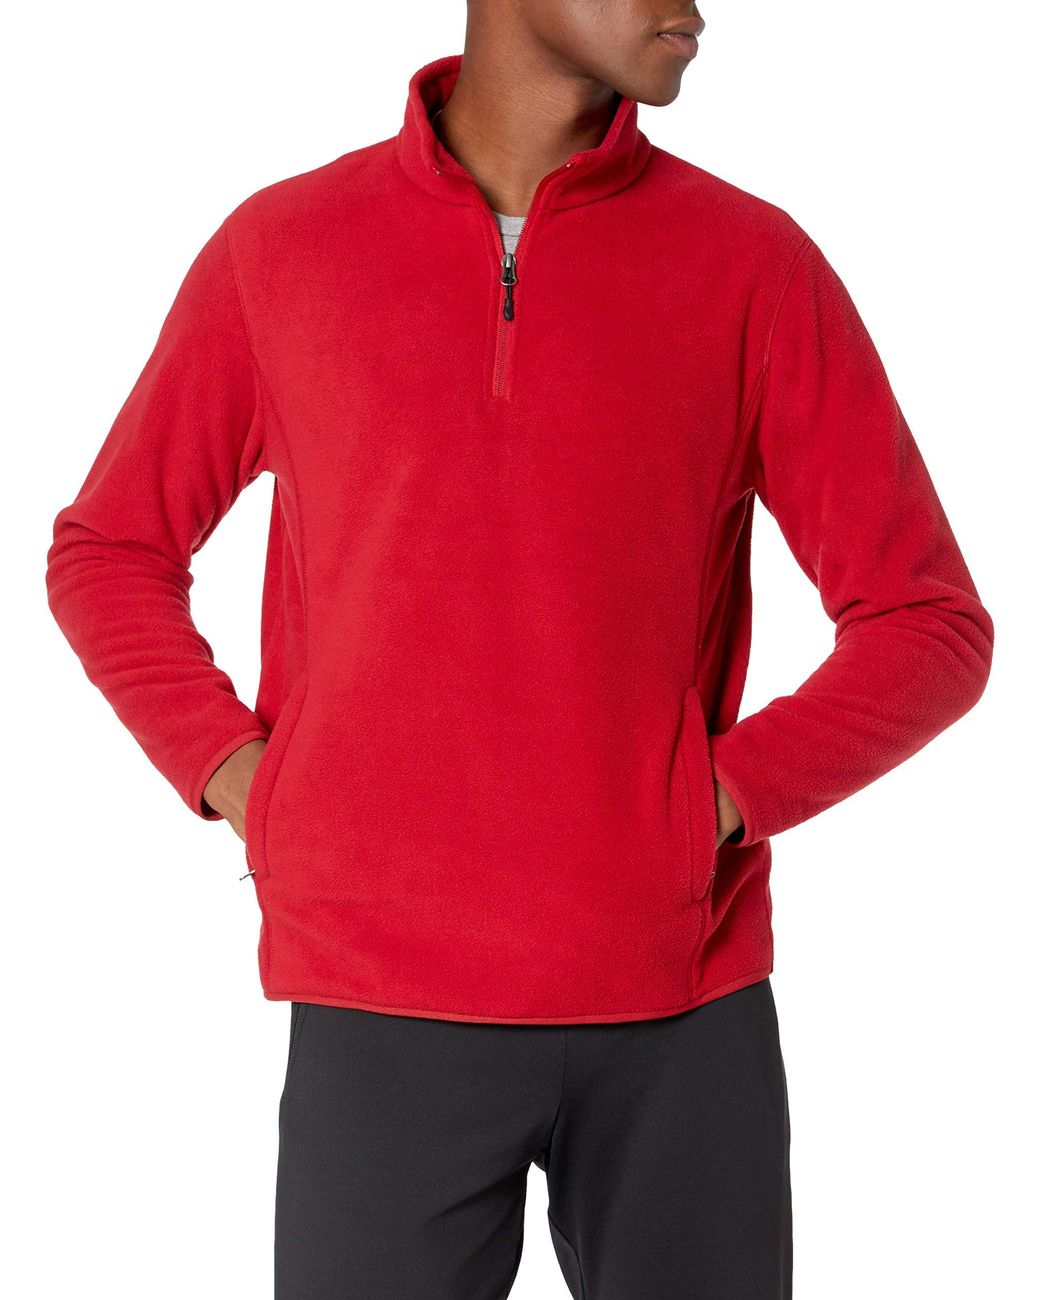 Amazon Essentials Quarter-zip Polar Fleece Jacket in Red for Men - Lyst